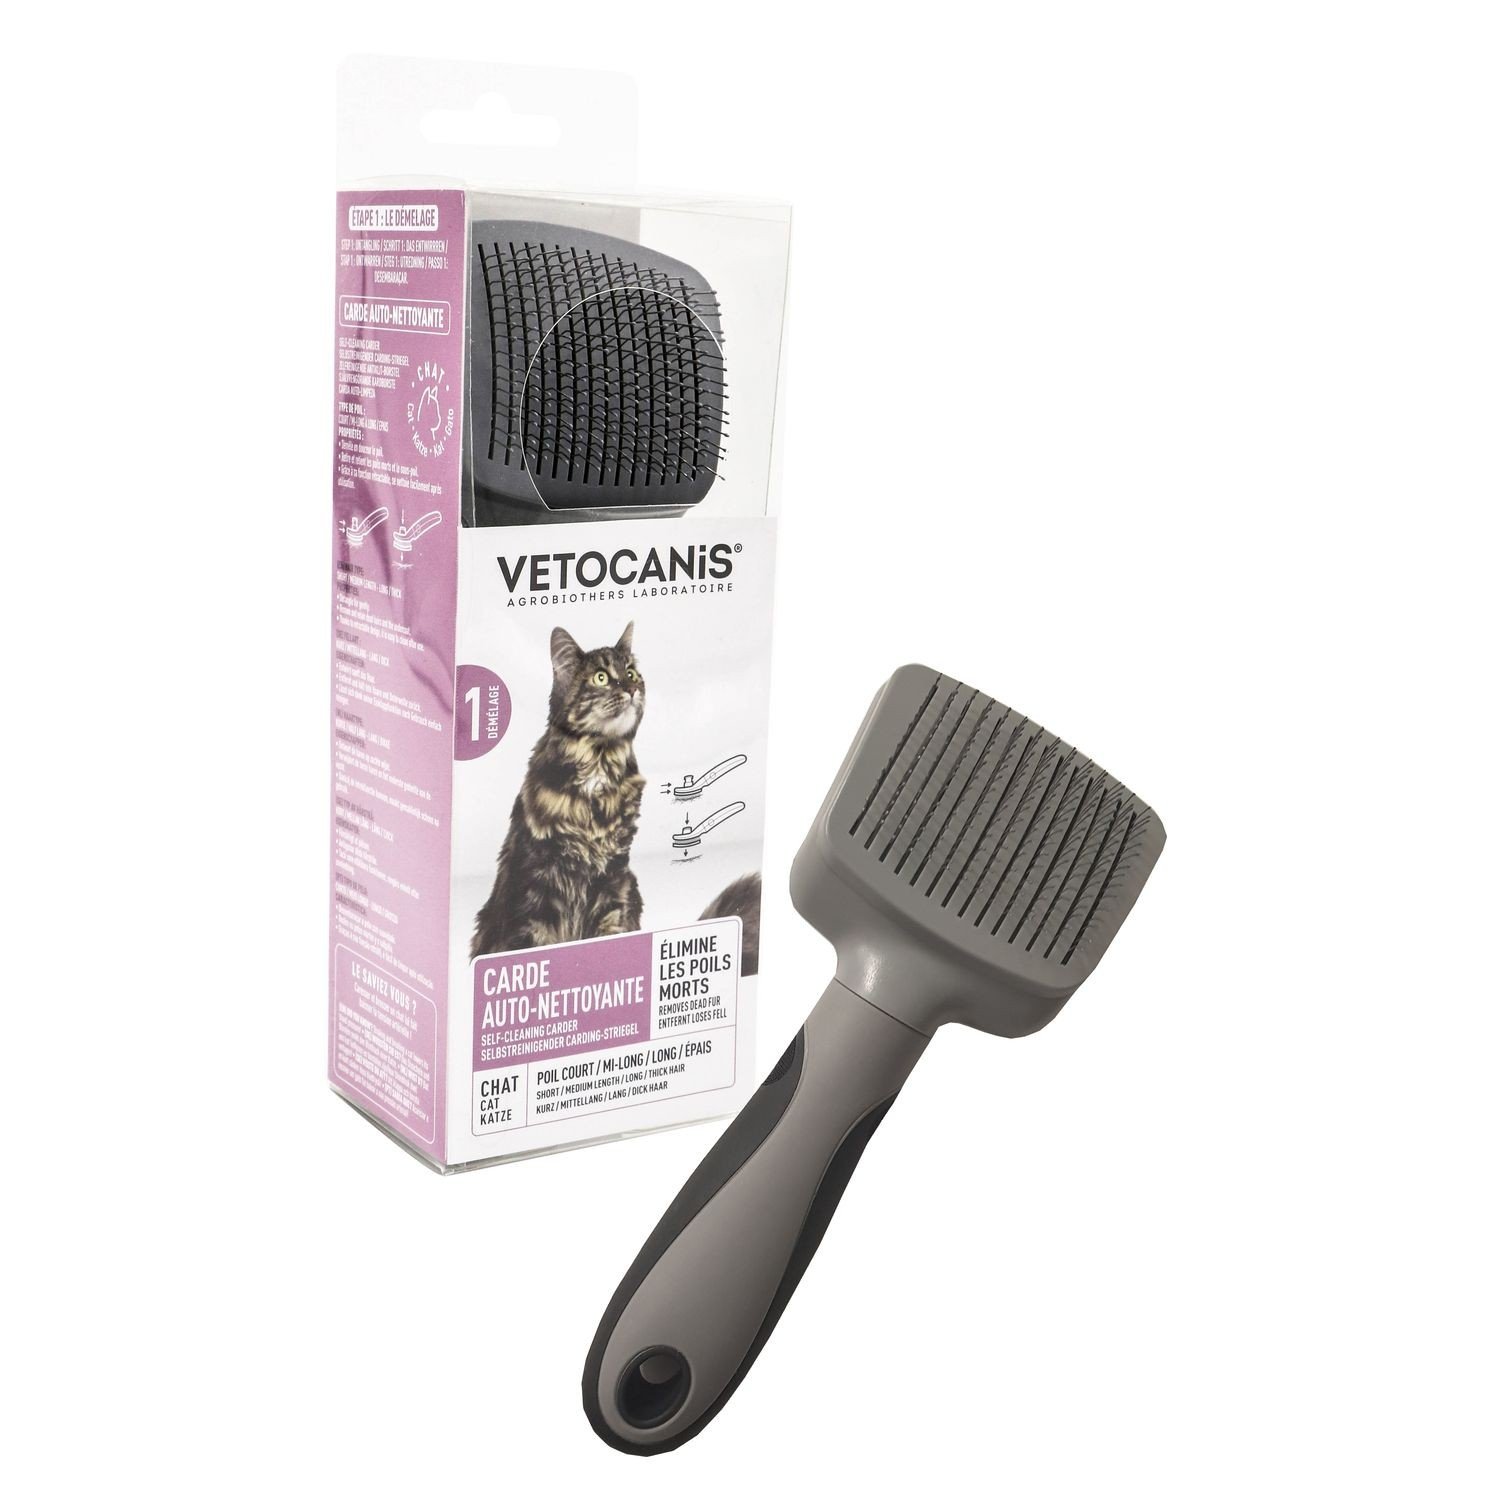 Vetocanis Wollkämmer für Katzen, ausziehbar und selbstreinigend